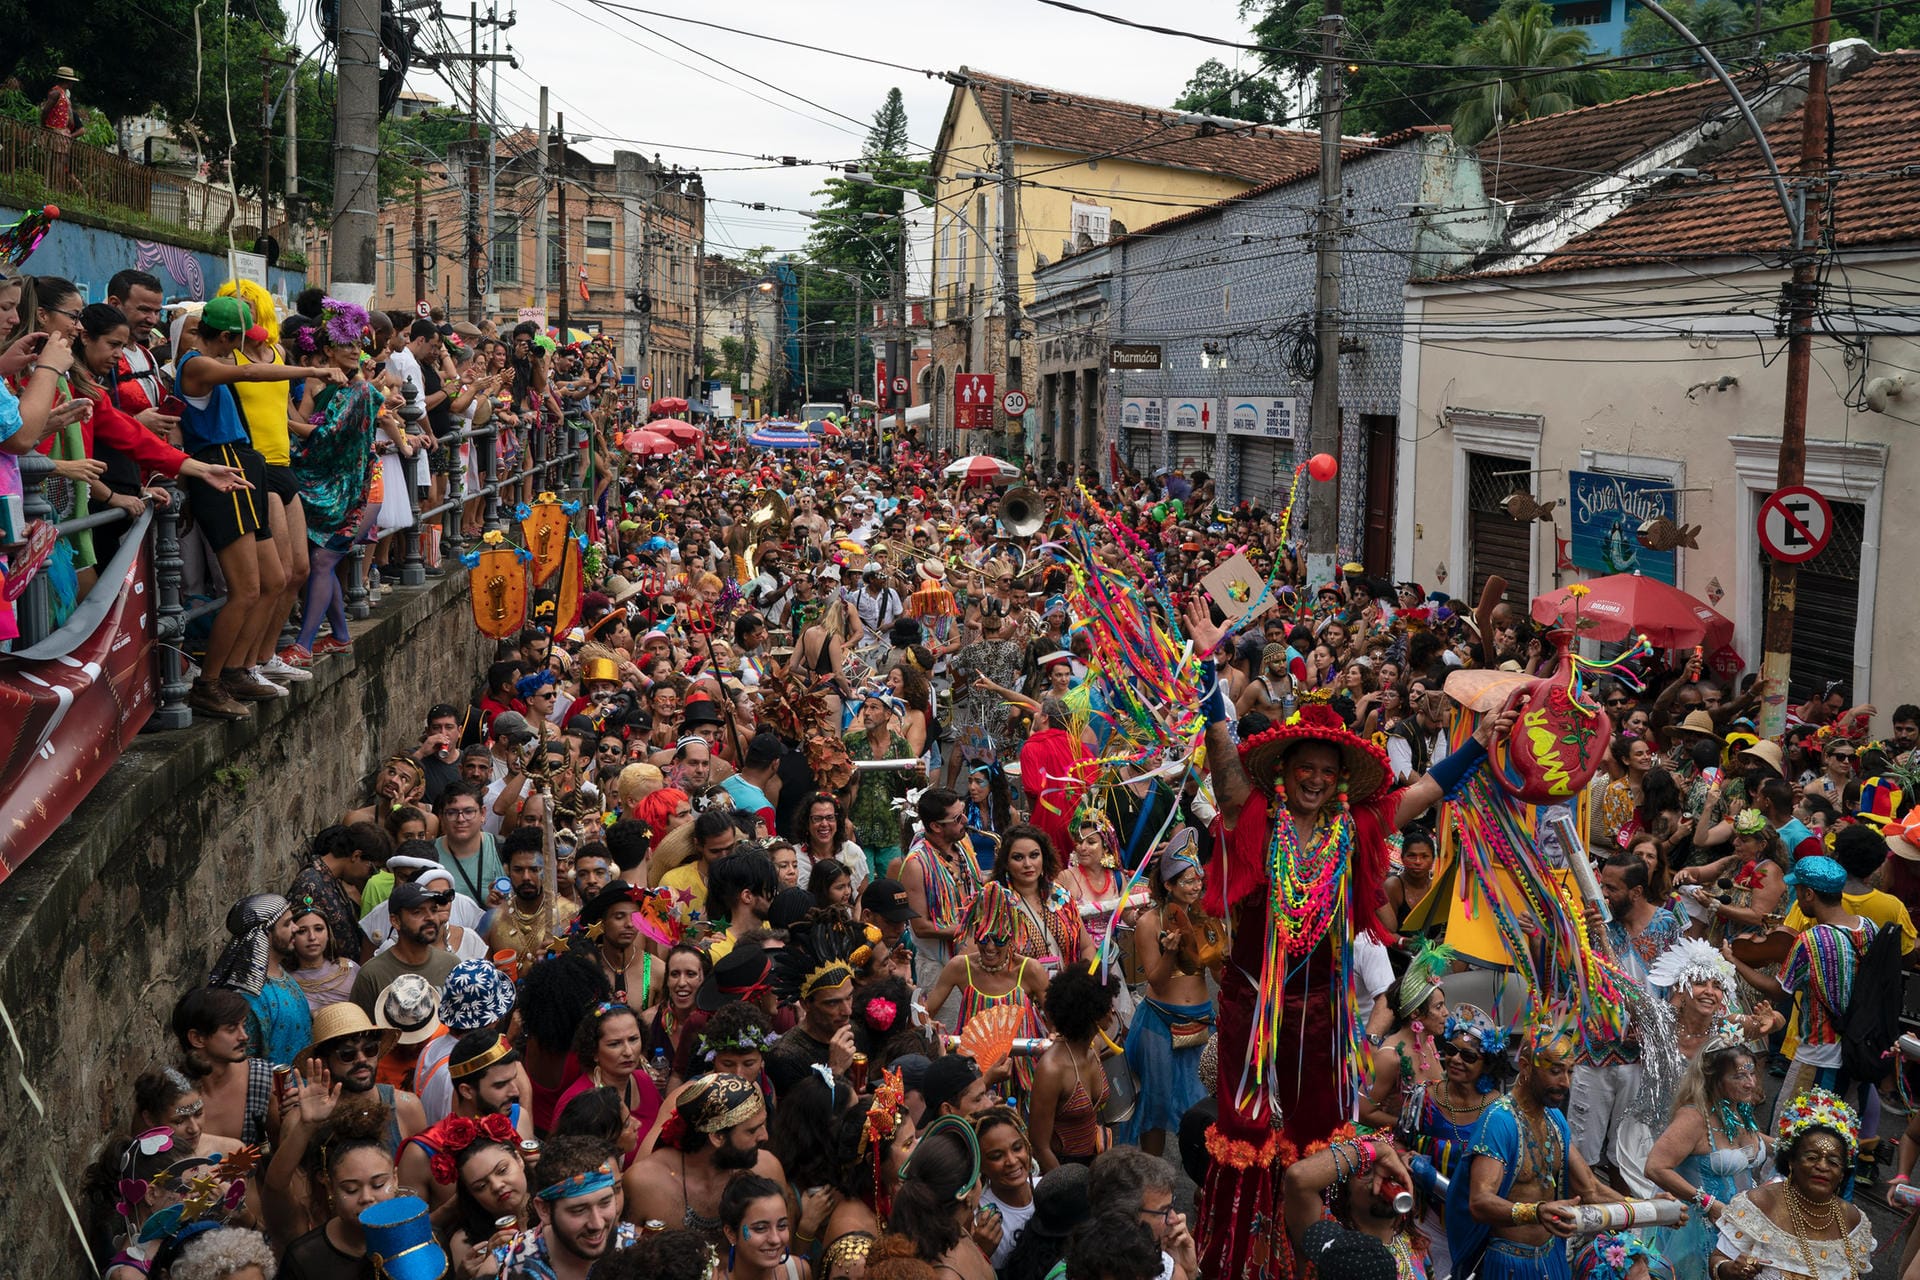 Kostümierte Karnevalsteilnehmer feiern beim Straßenfest «Ceu na Terra» (Himmel auf Erden) im Viertel Santa Teresa.